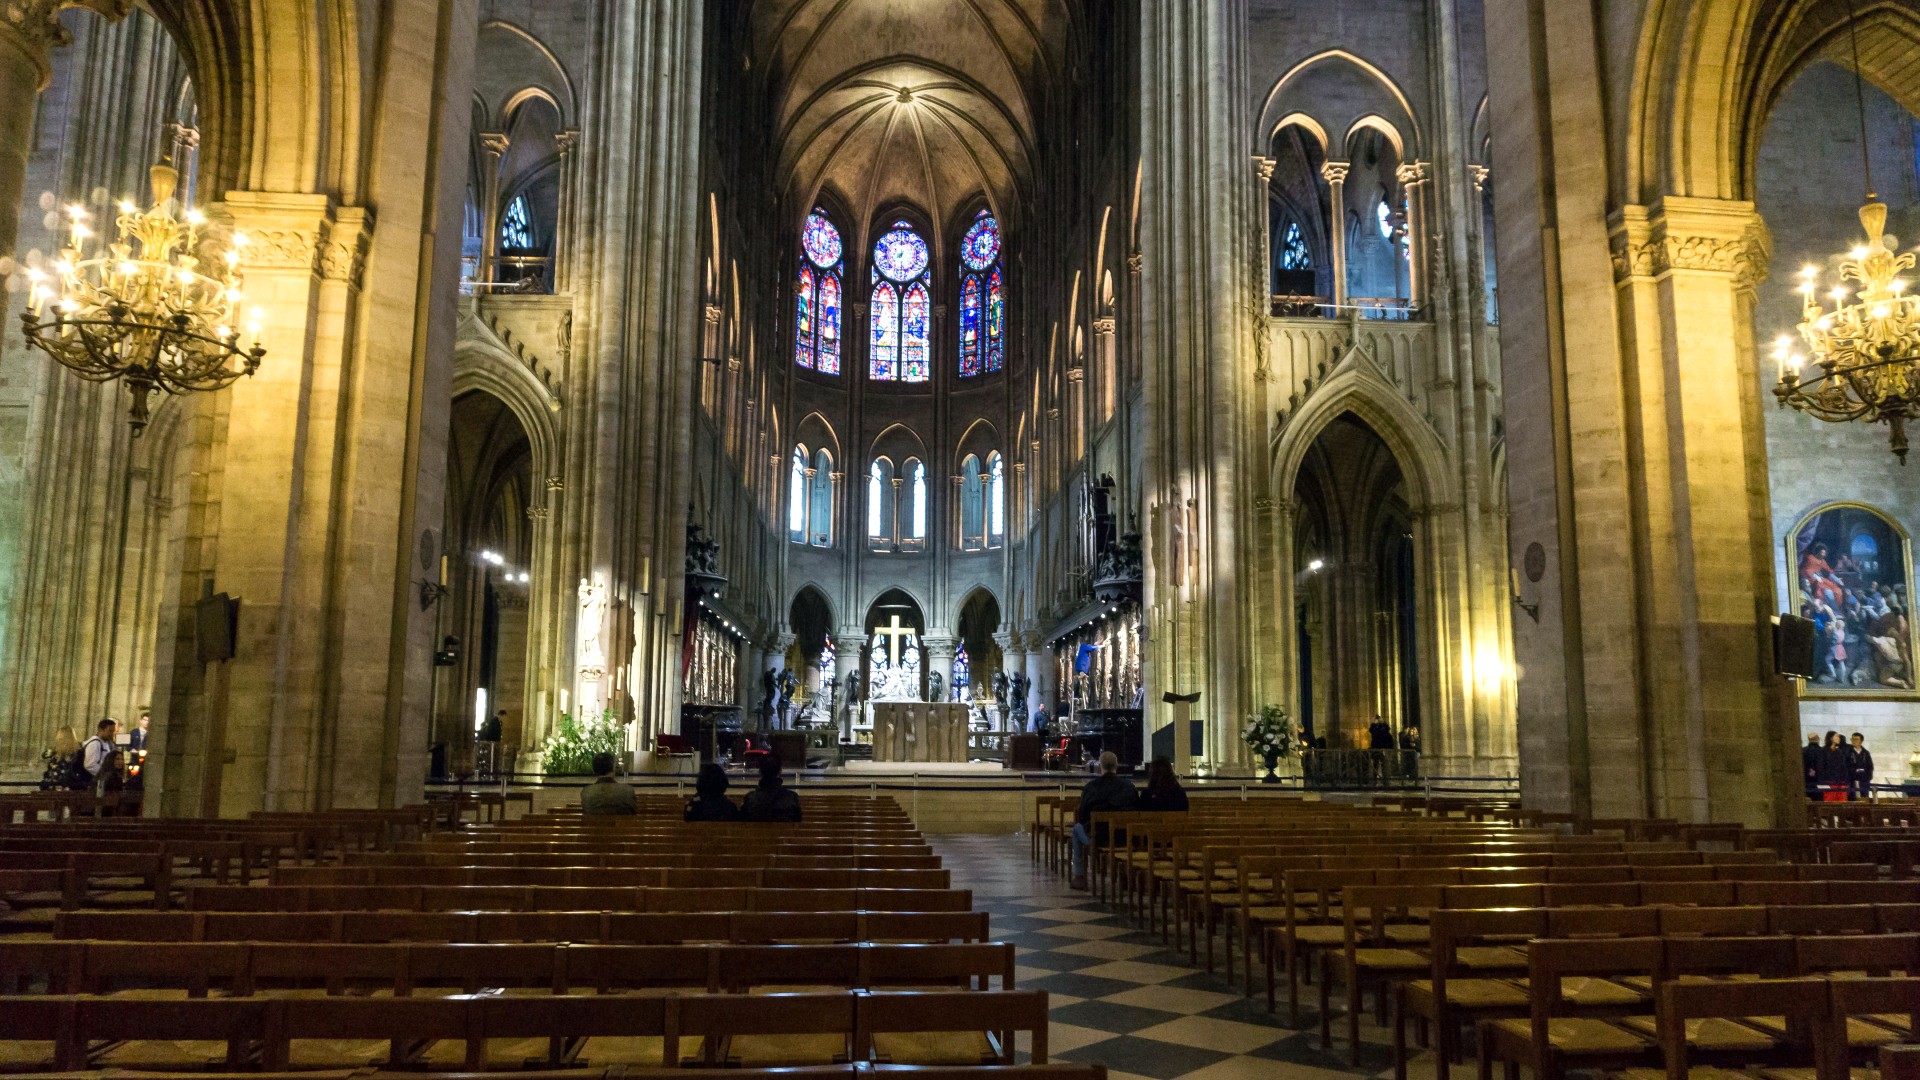 picture: Paryska katedra bogatych, ława, nawa, Francja, pretty pic (image)